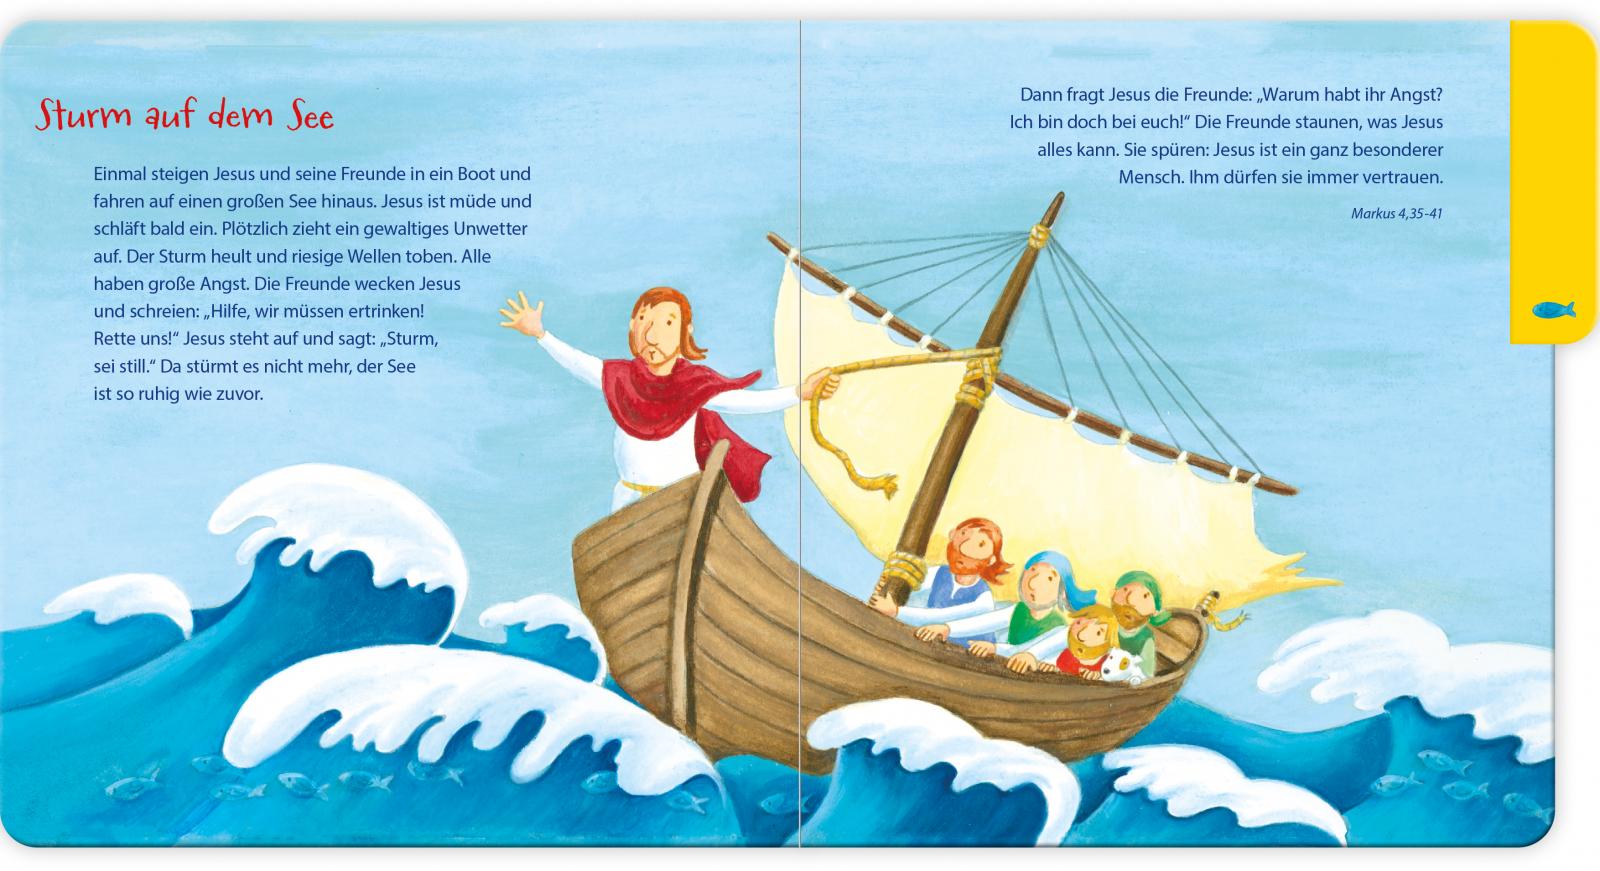 Kinderbuch - Mein erstes Bibel-Bilderbuch von Jesus